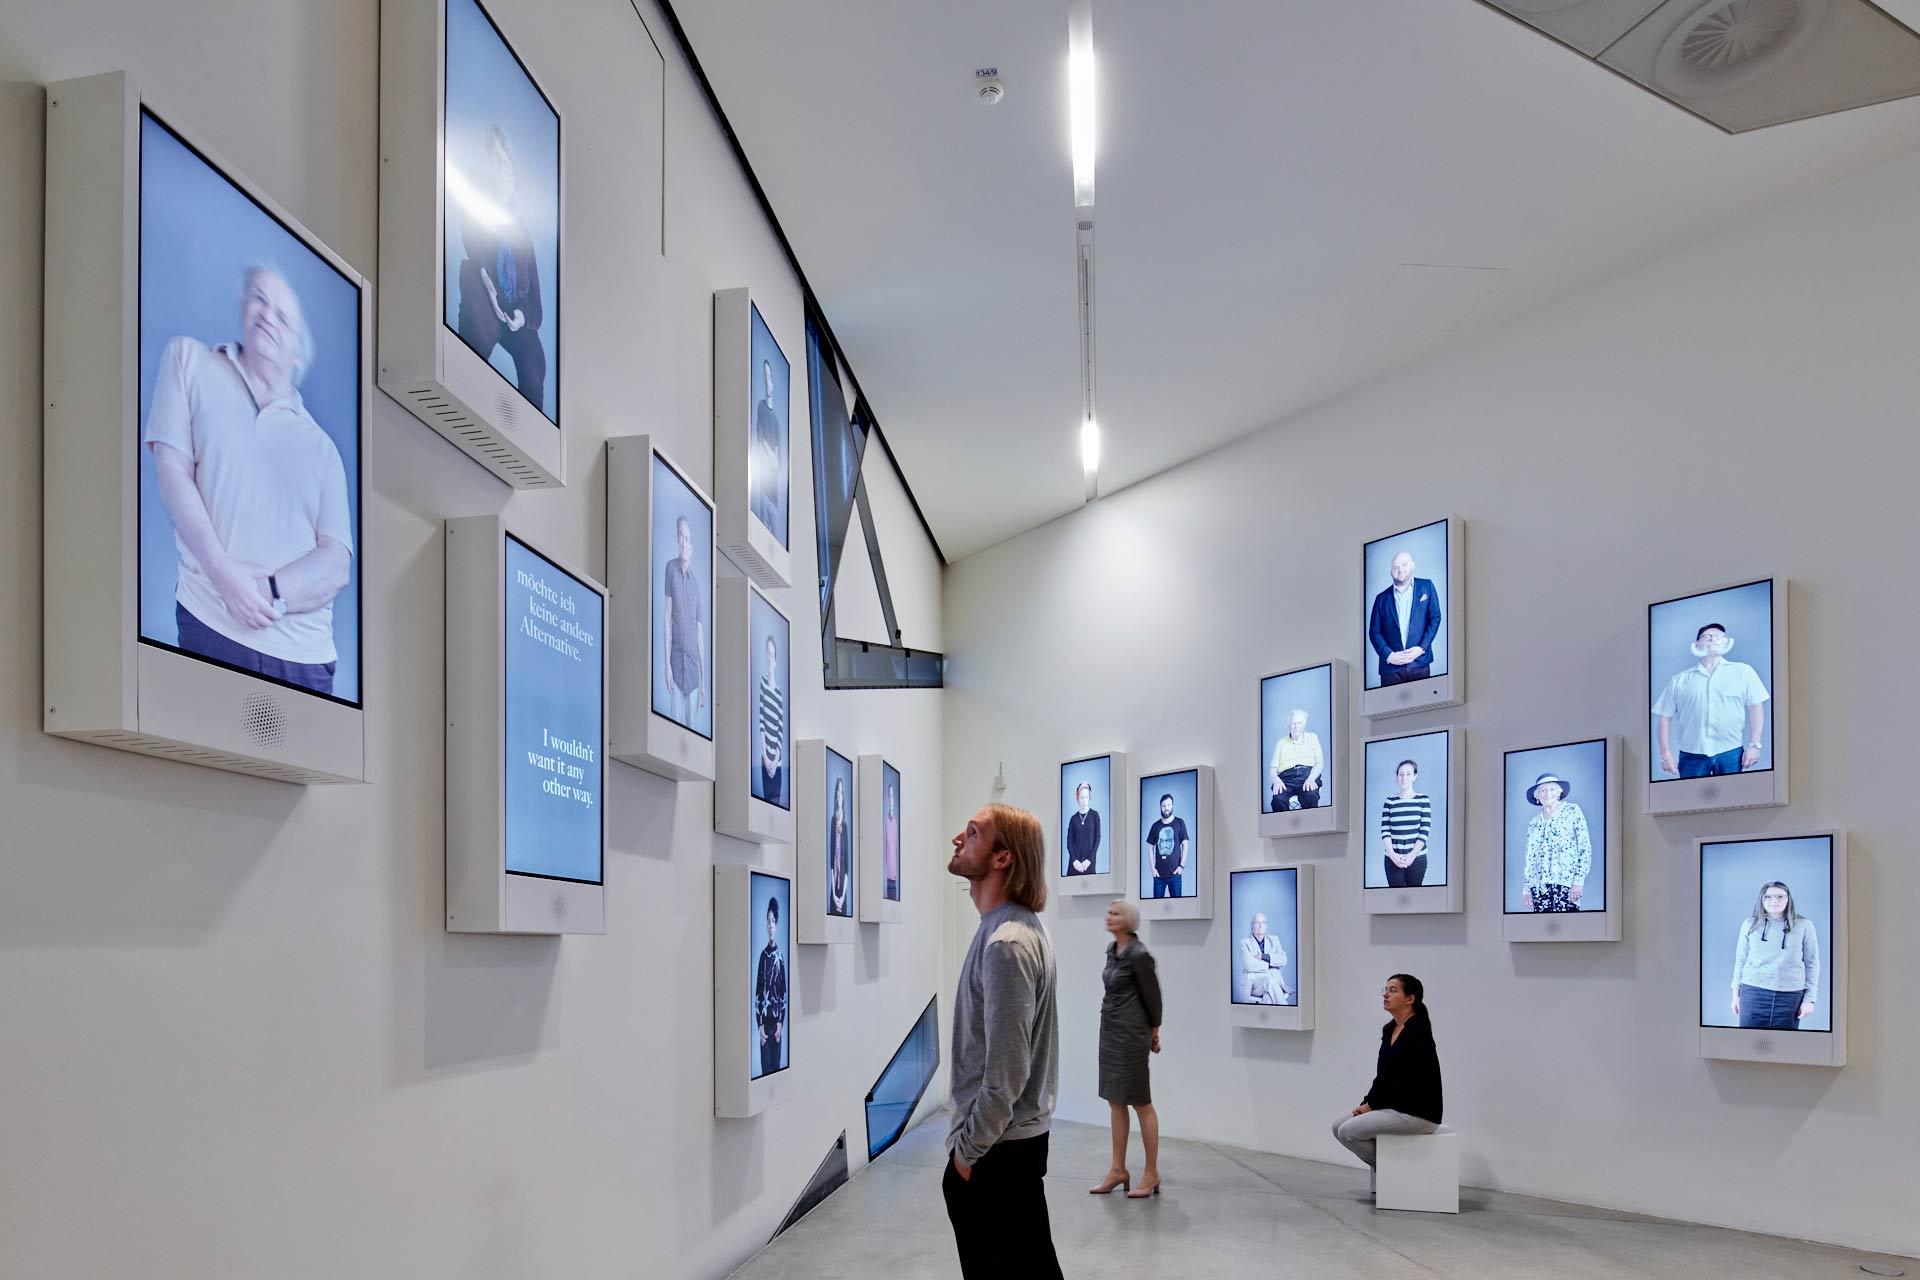 Besucher*innen in einem Ausstellungsraum mit an den Wänden verteilten Bildschirmen, auf denen Videos diverser Menschen zu sehen sind